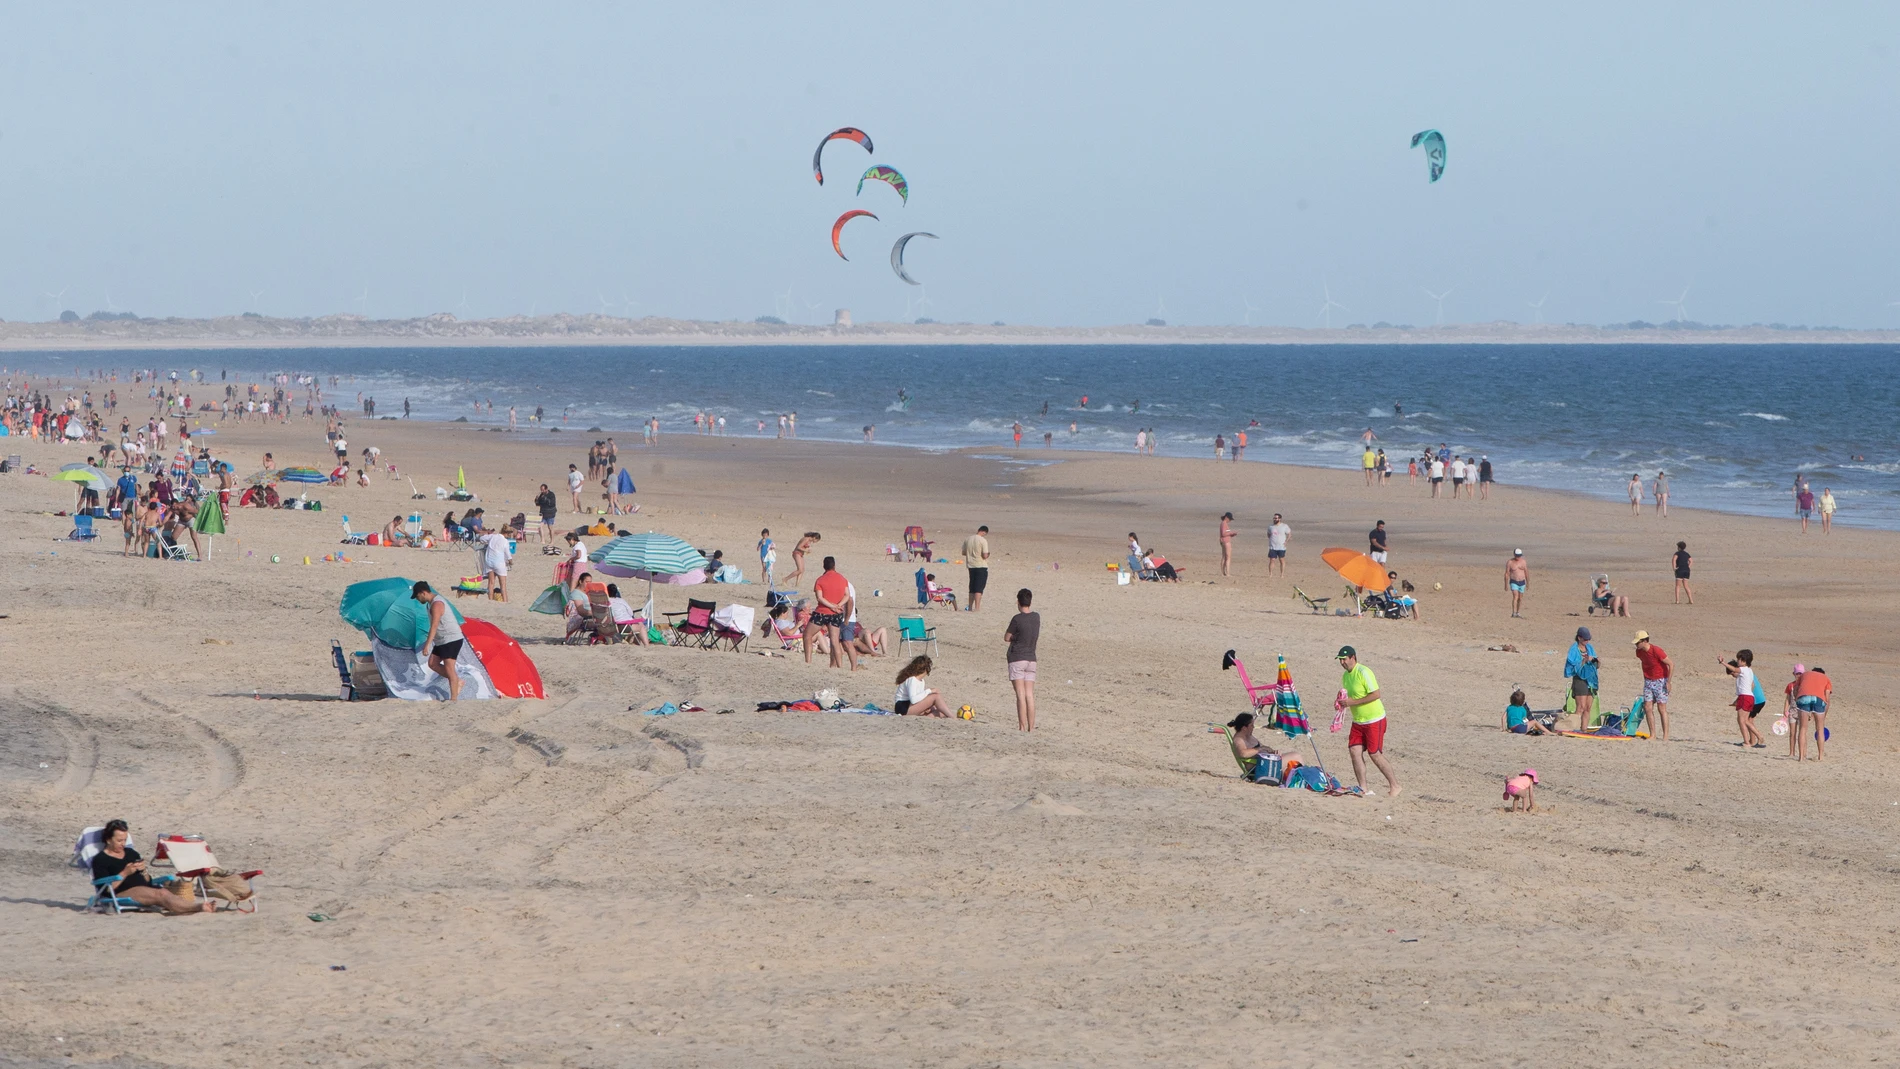 Las playas de Matalascañas, en Huelva, comenzaron a llenarse con los primeros días de calor en Andalucía